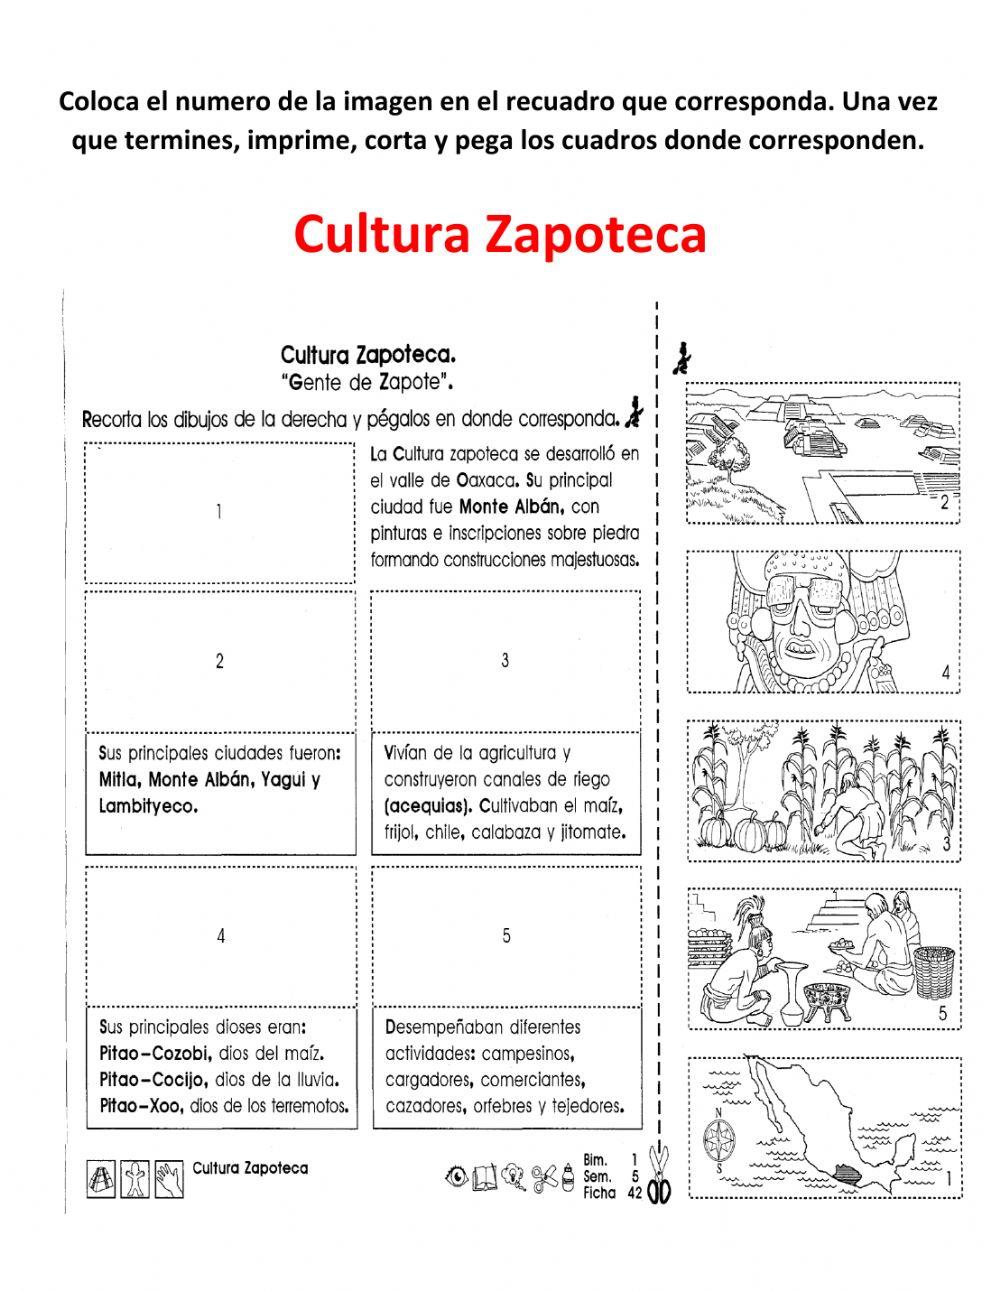 Culturas Zapoteca y Mixteca